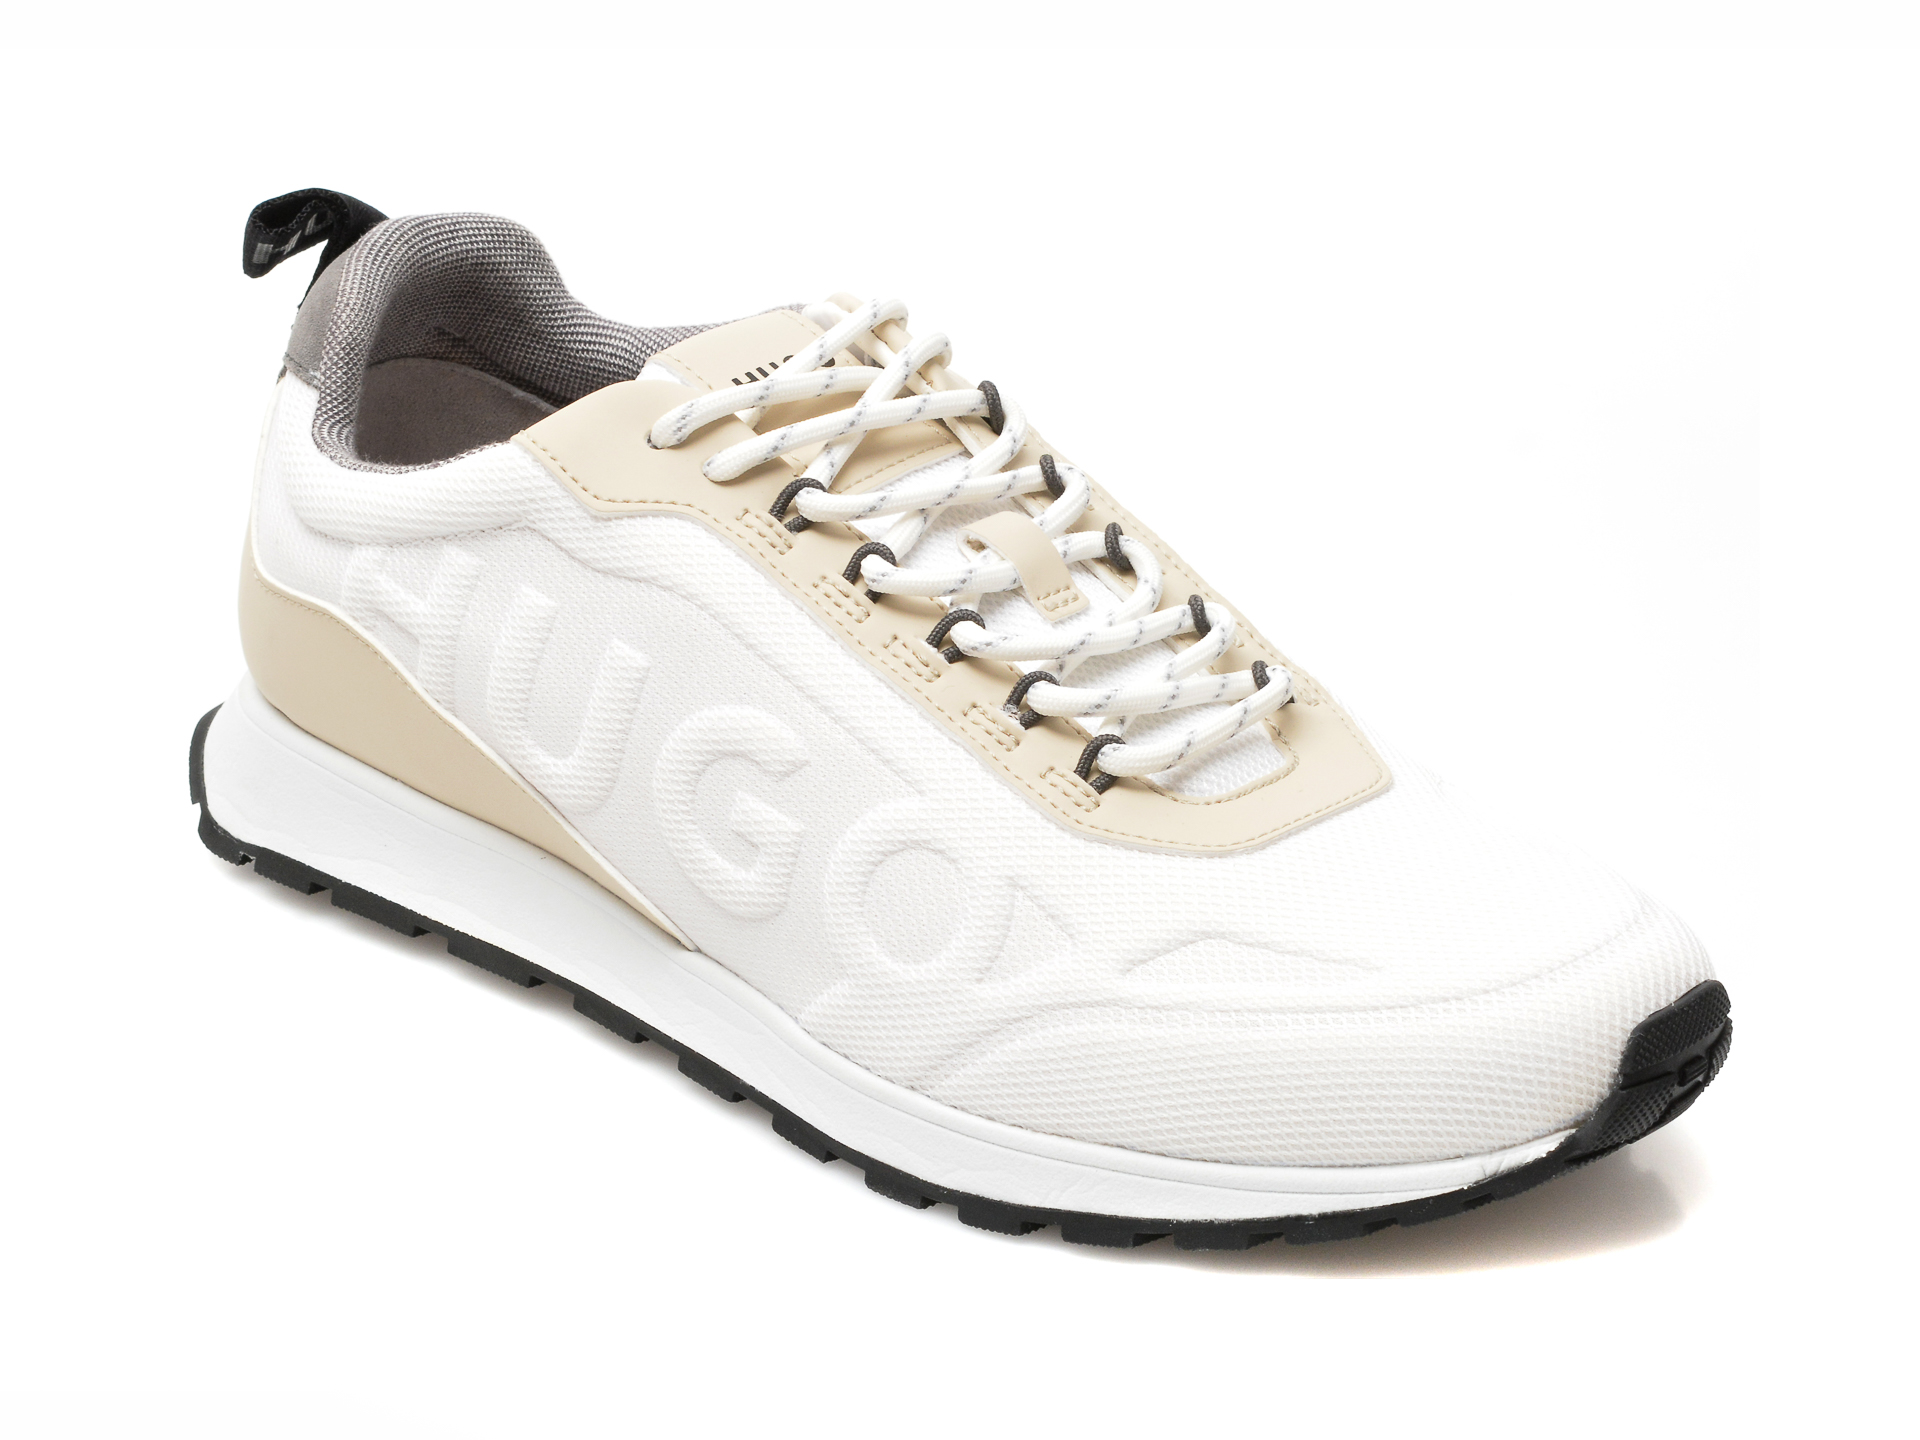 Pantofi sport HUGO BOSS albi, 382, din material textil /barbati/pantofi